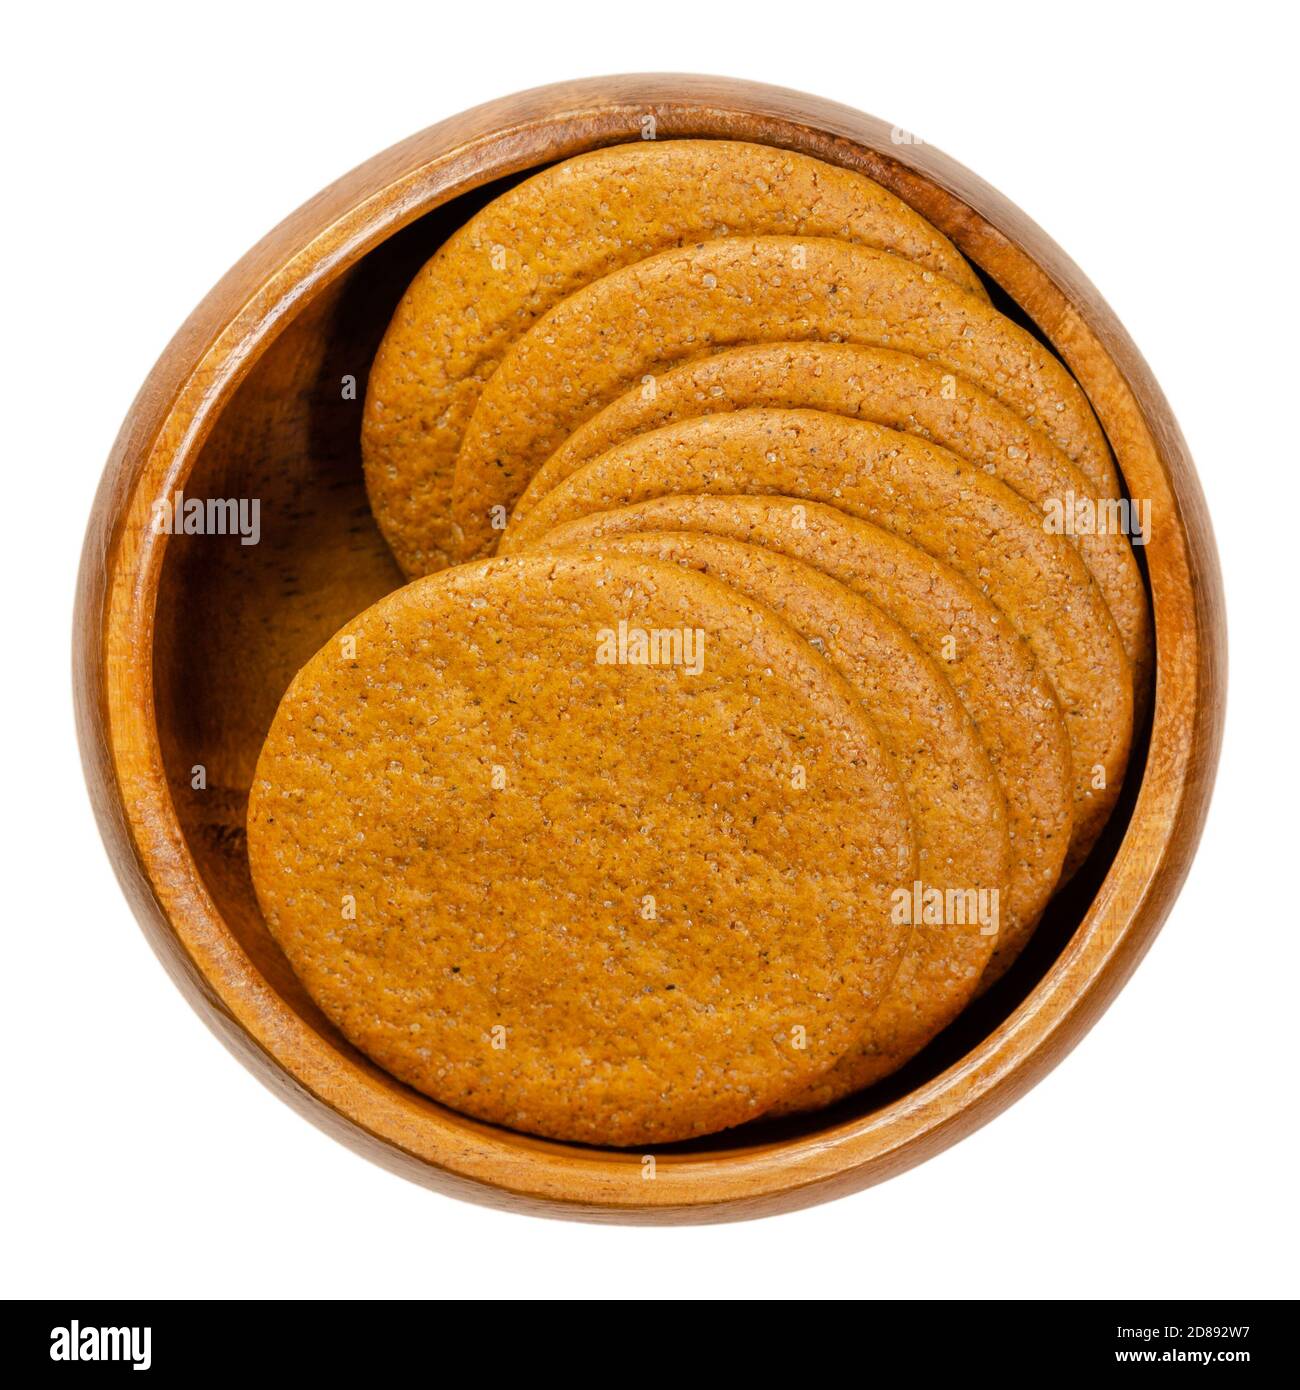 Le gingembre s'emboîte dans un bol en bois. Noix de gingembre scandinave. Biscuits fins de forme ronde, aromatisés au gingembre, à la cannelle, à la mélasse et au clou de girofle. Banque D'Images